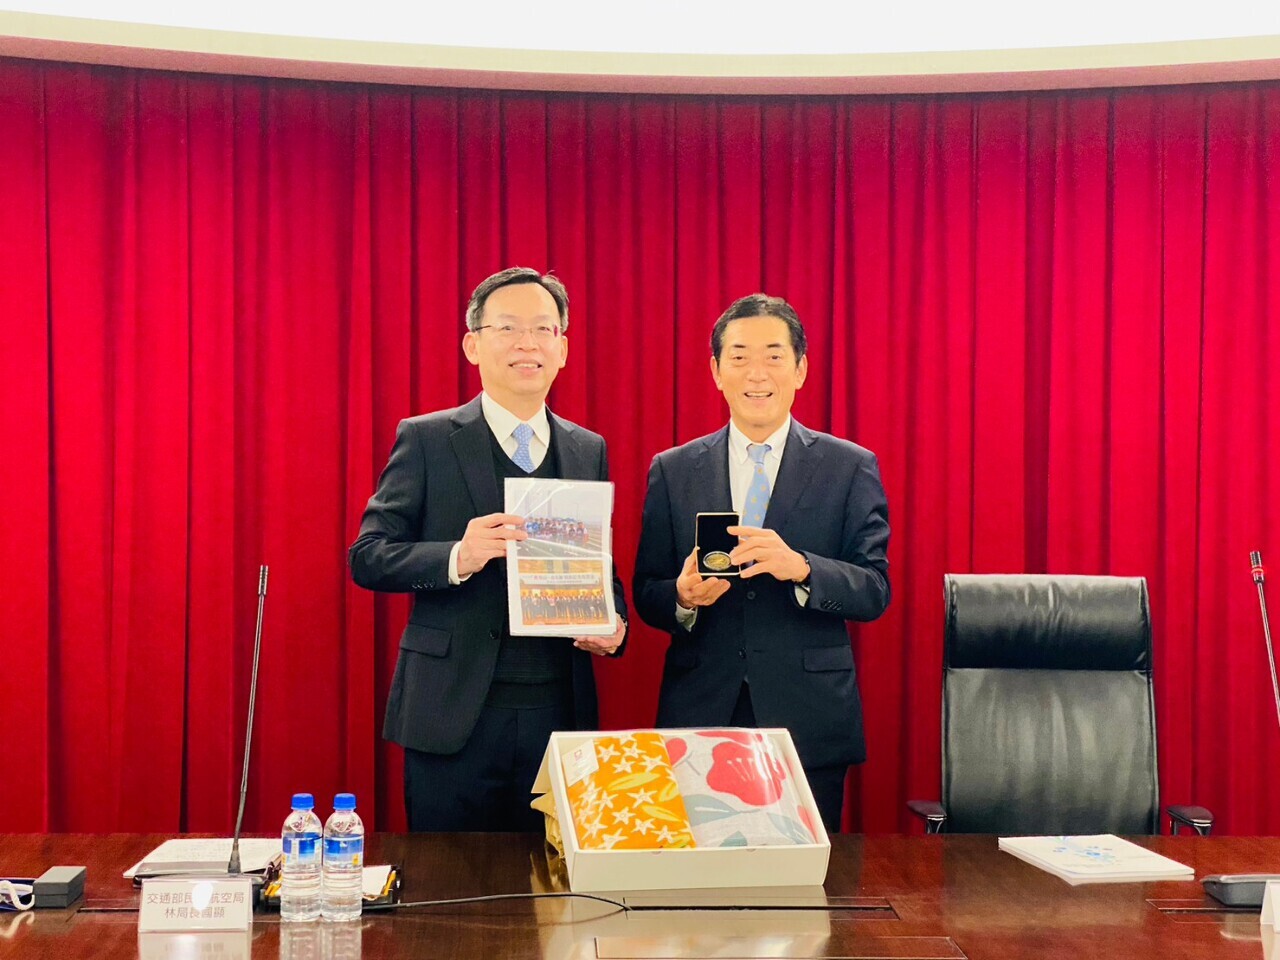 Thống đốc Tokihiro Nakamura tỉnh Ehime Nhật Bản (ảnh bên phải) đã có chuyến thăm ông Lâm Quốc Hiển - Giám đốc Cục Hàng không Dân dụng Đài Loan (nguồn ảnh: Cục Hàng không dân dụng cung cấp)